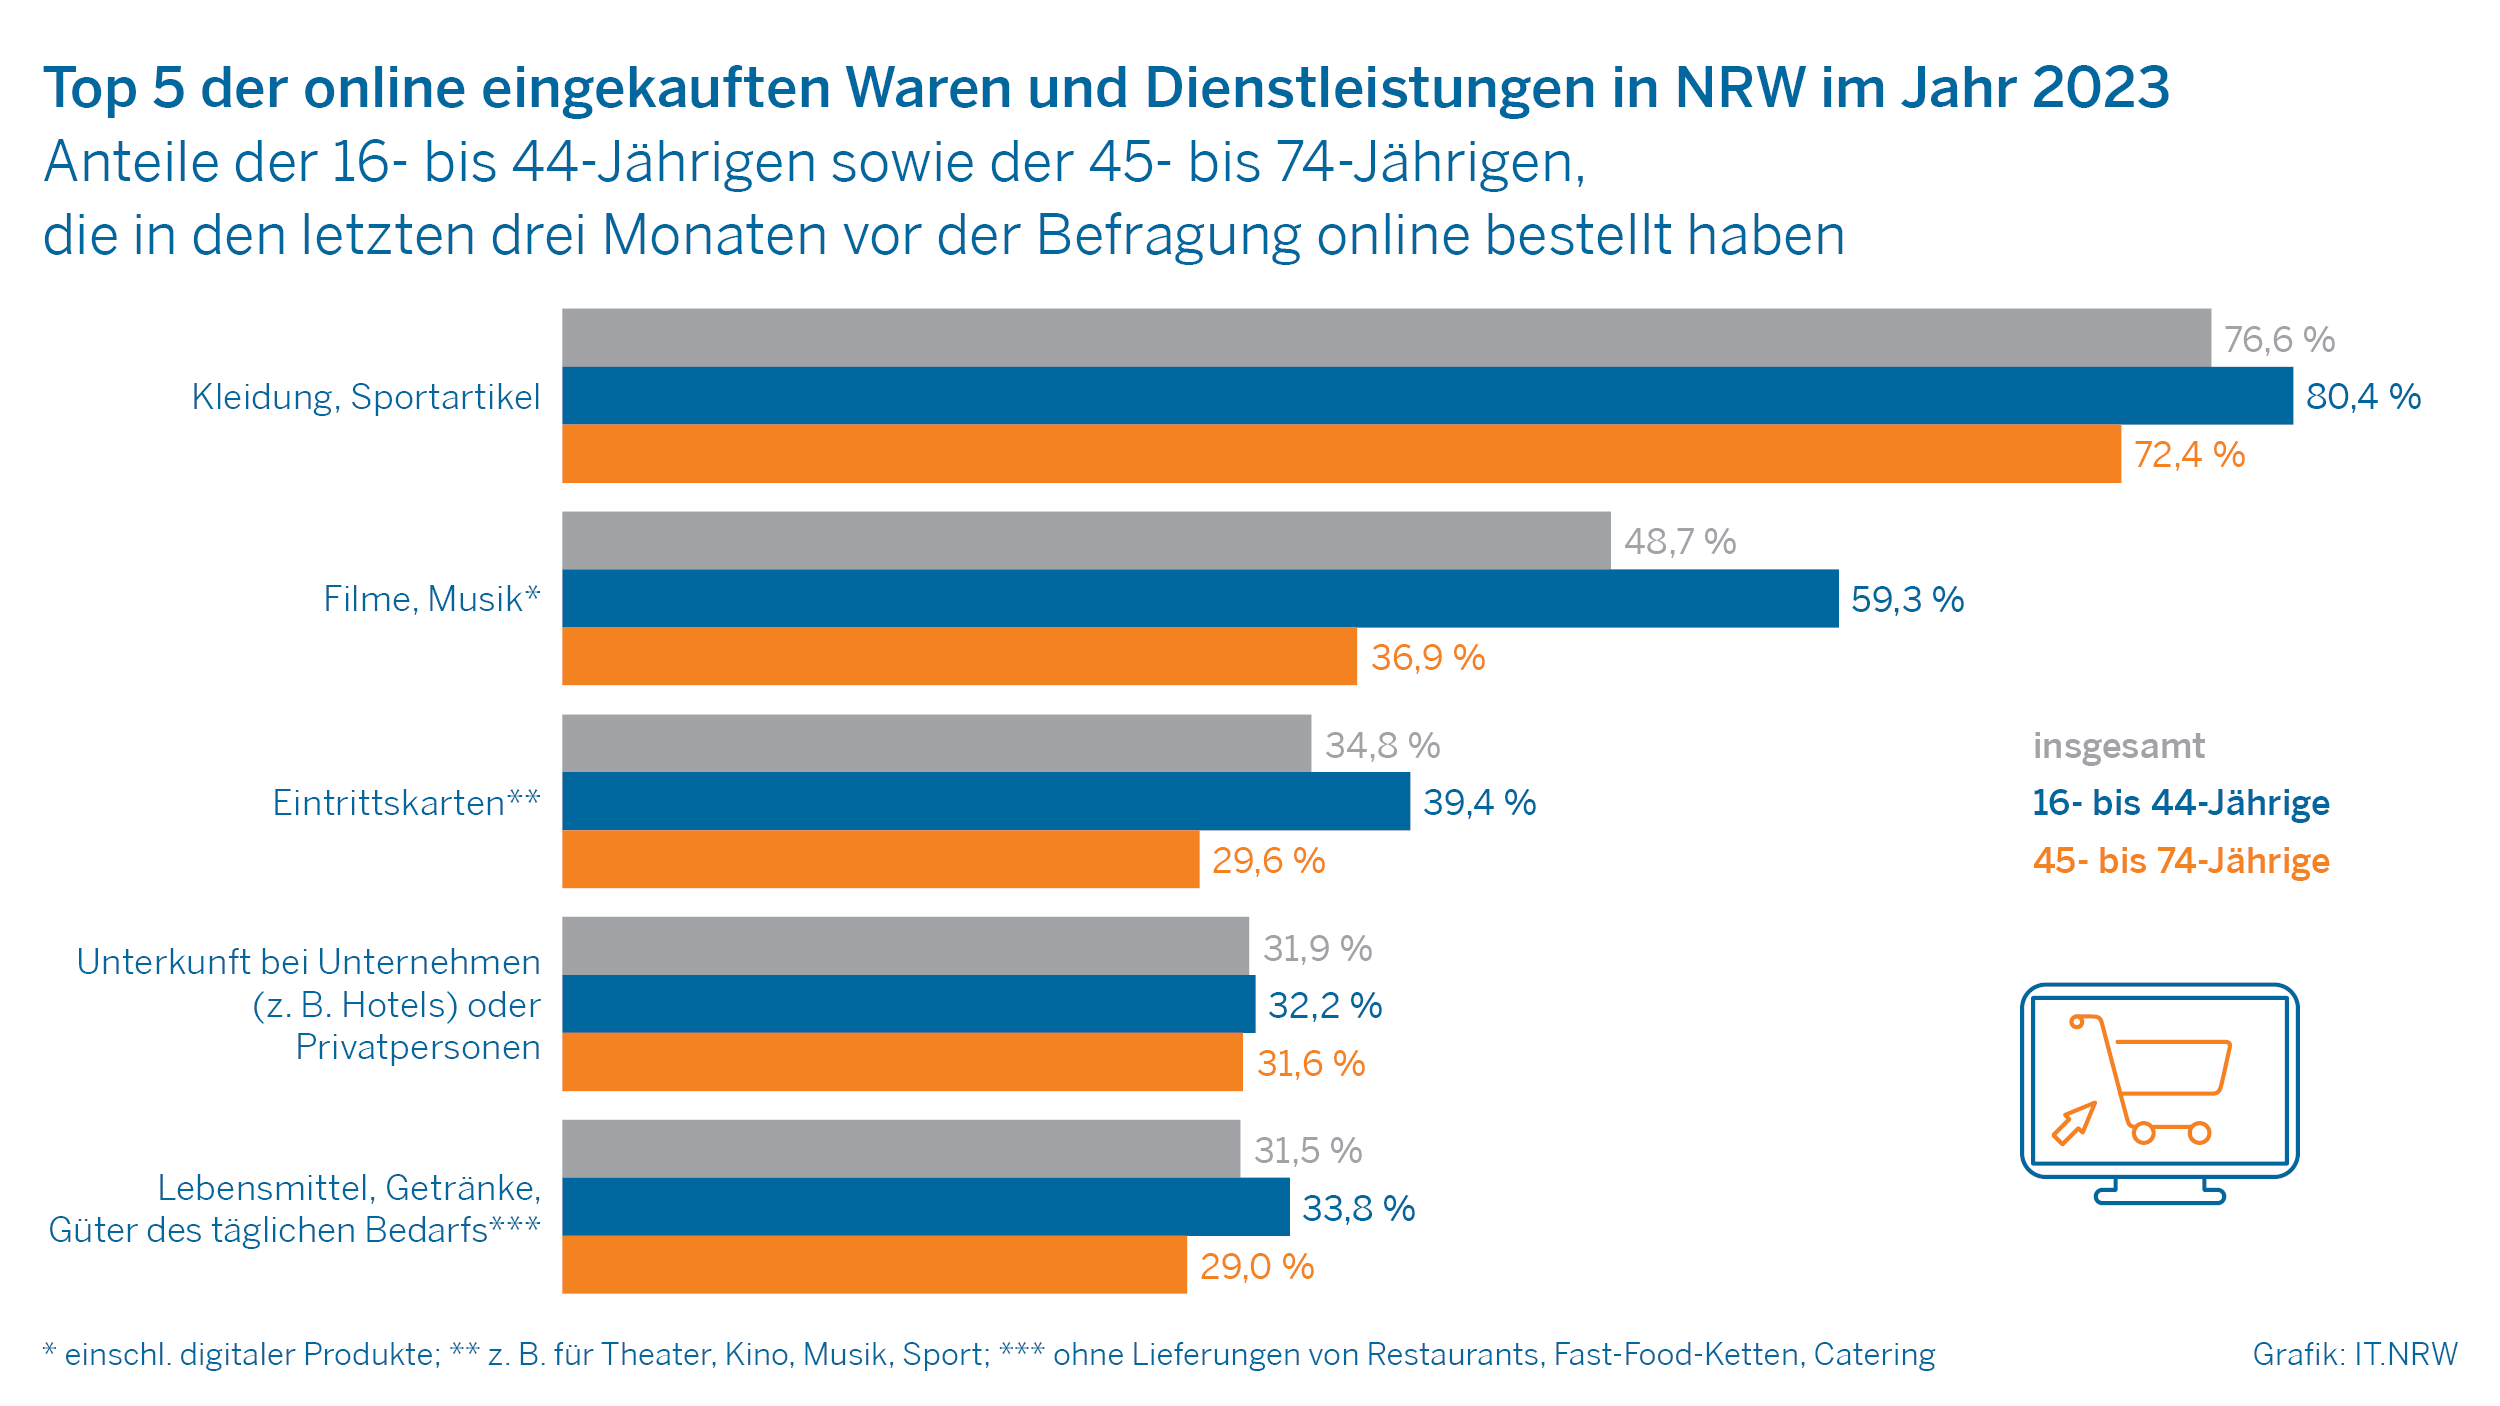 Top 5 der online eingekauften Waren und Dienstleistungen in NRW im Jahr 2023